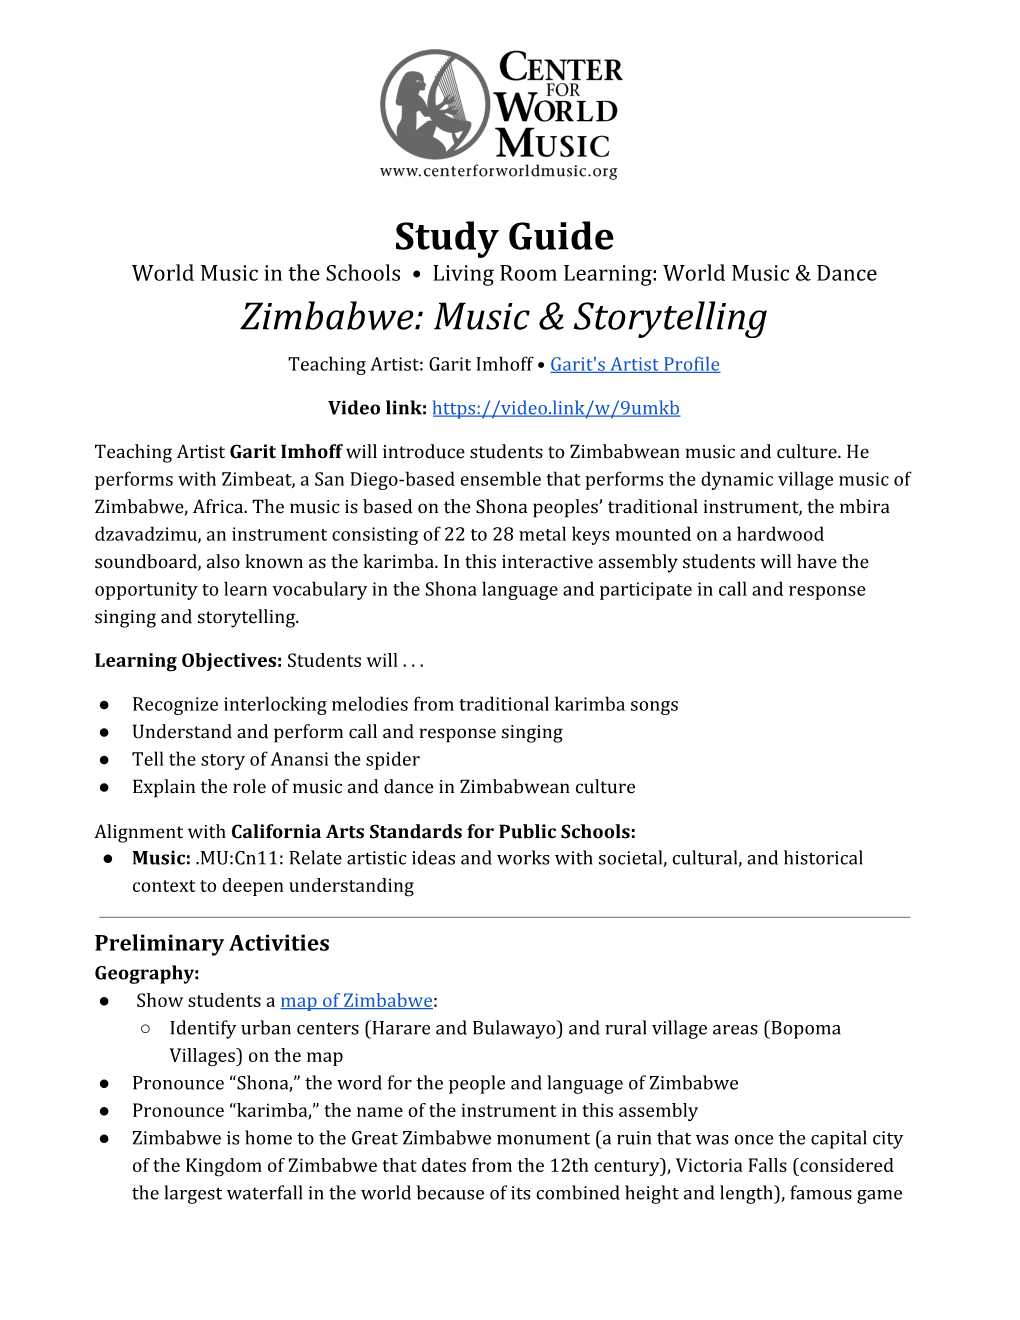 Study Guide Zimbabwe